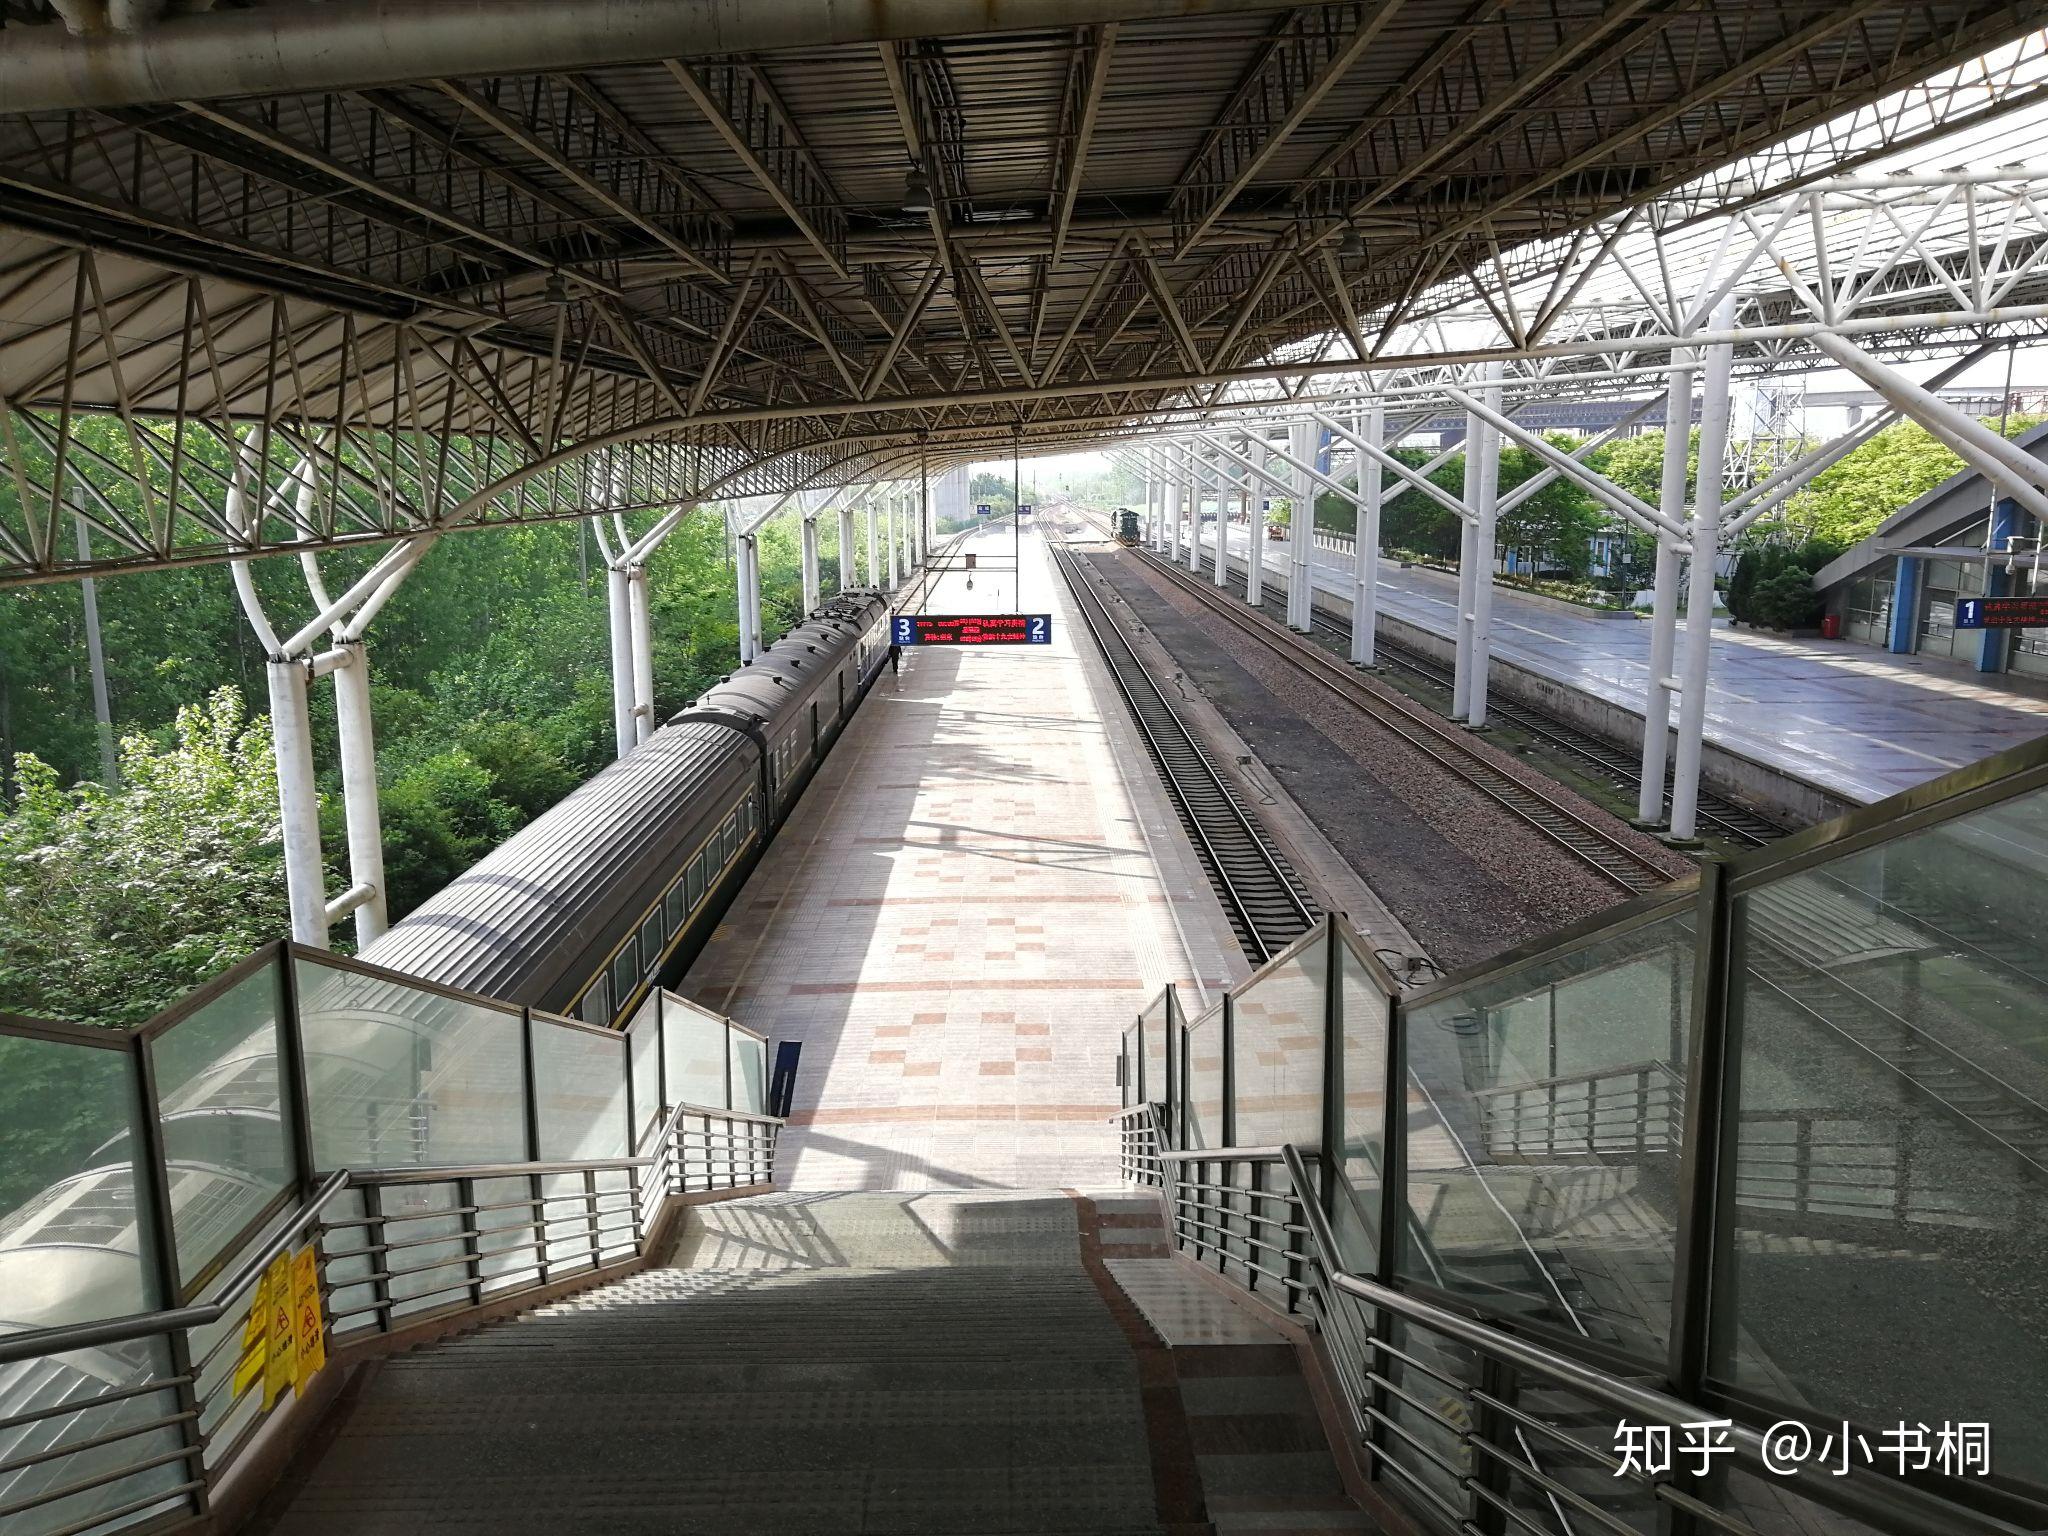 盐城站一共有两个站台三个站台面,在天桥上可以俯瞰整个站场